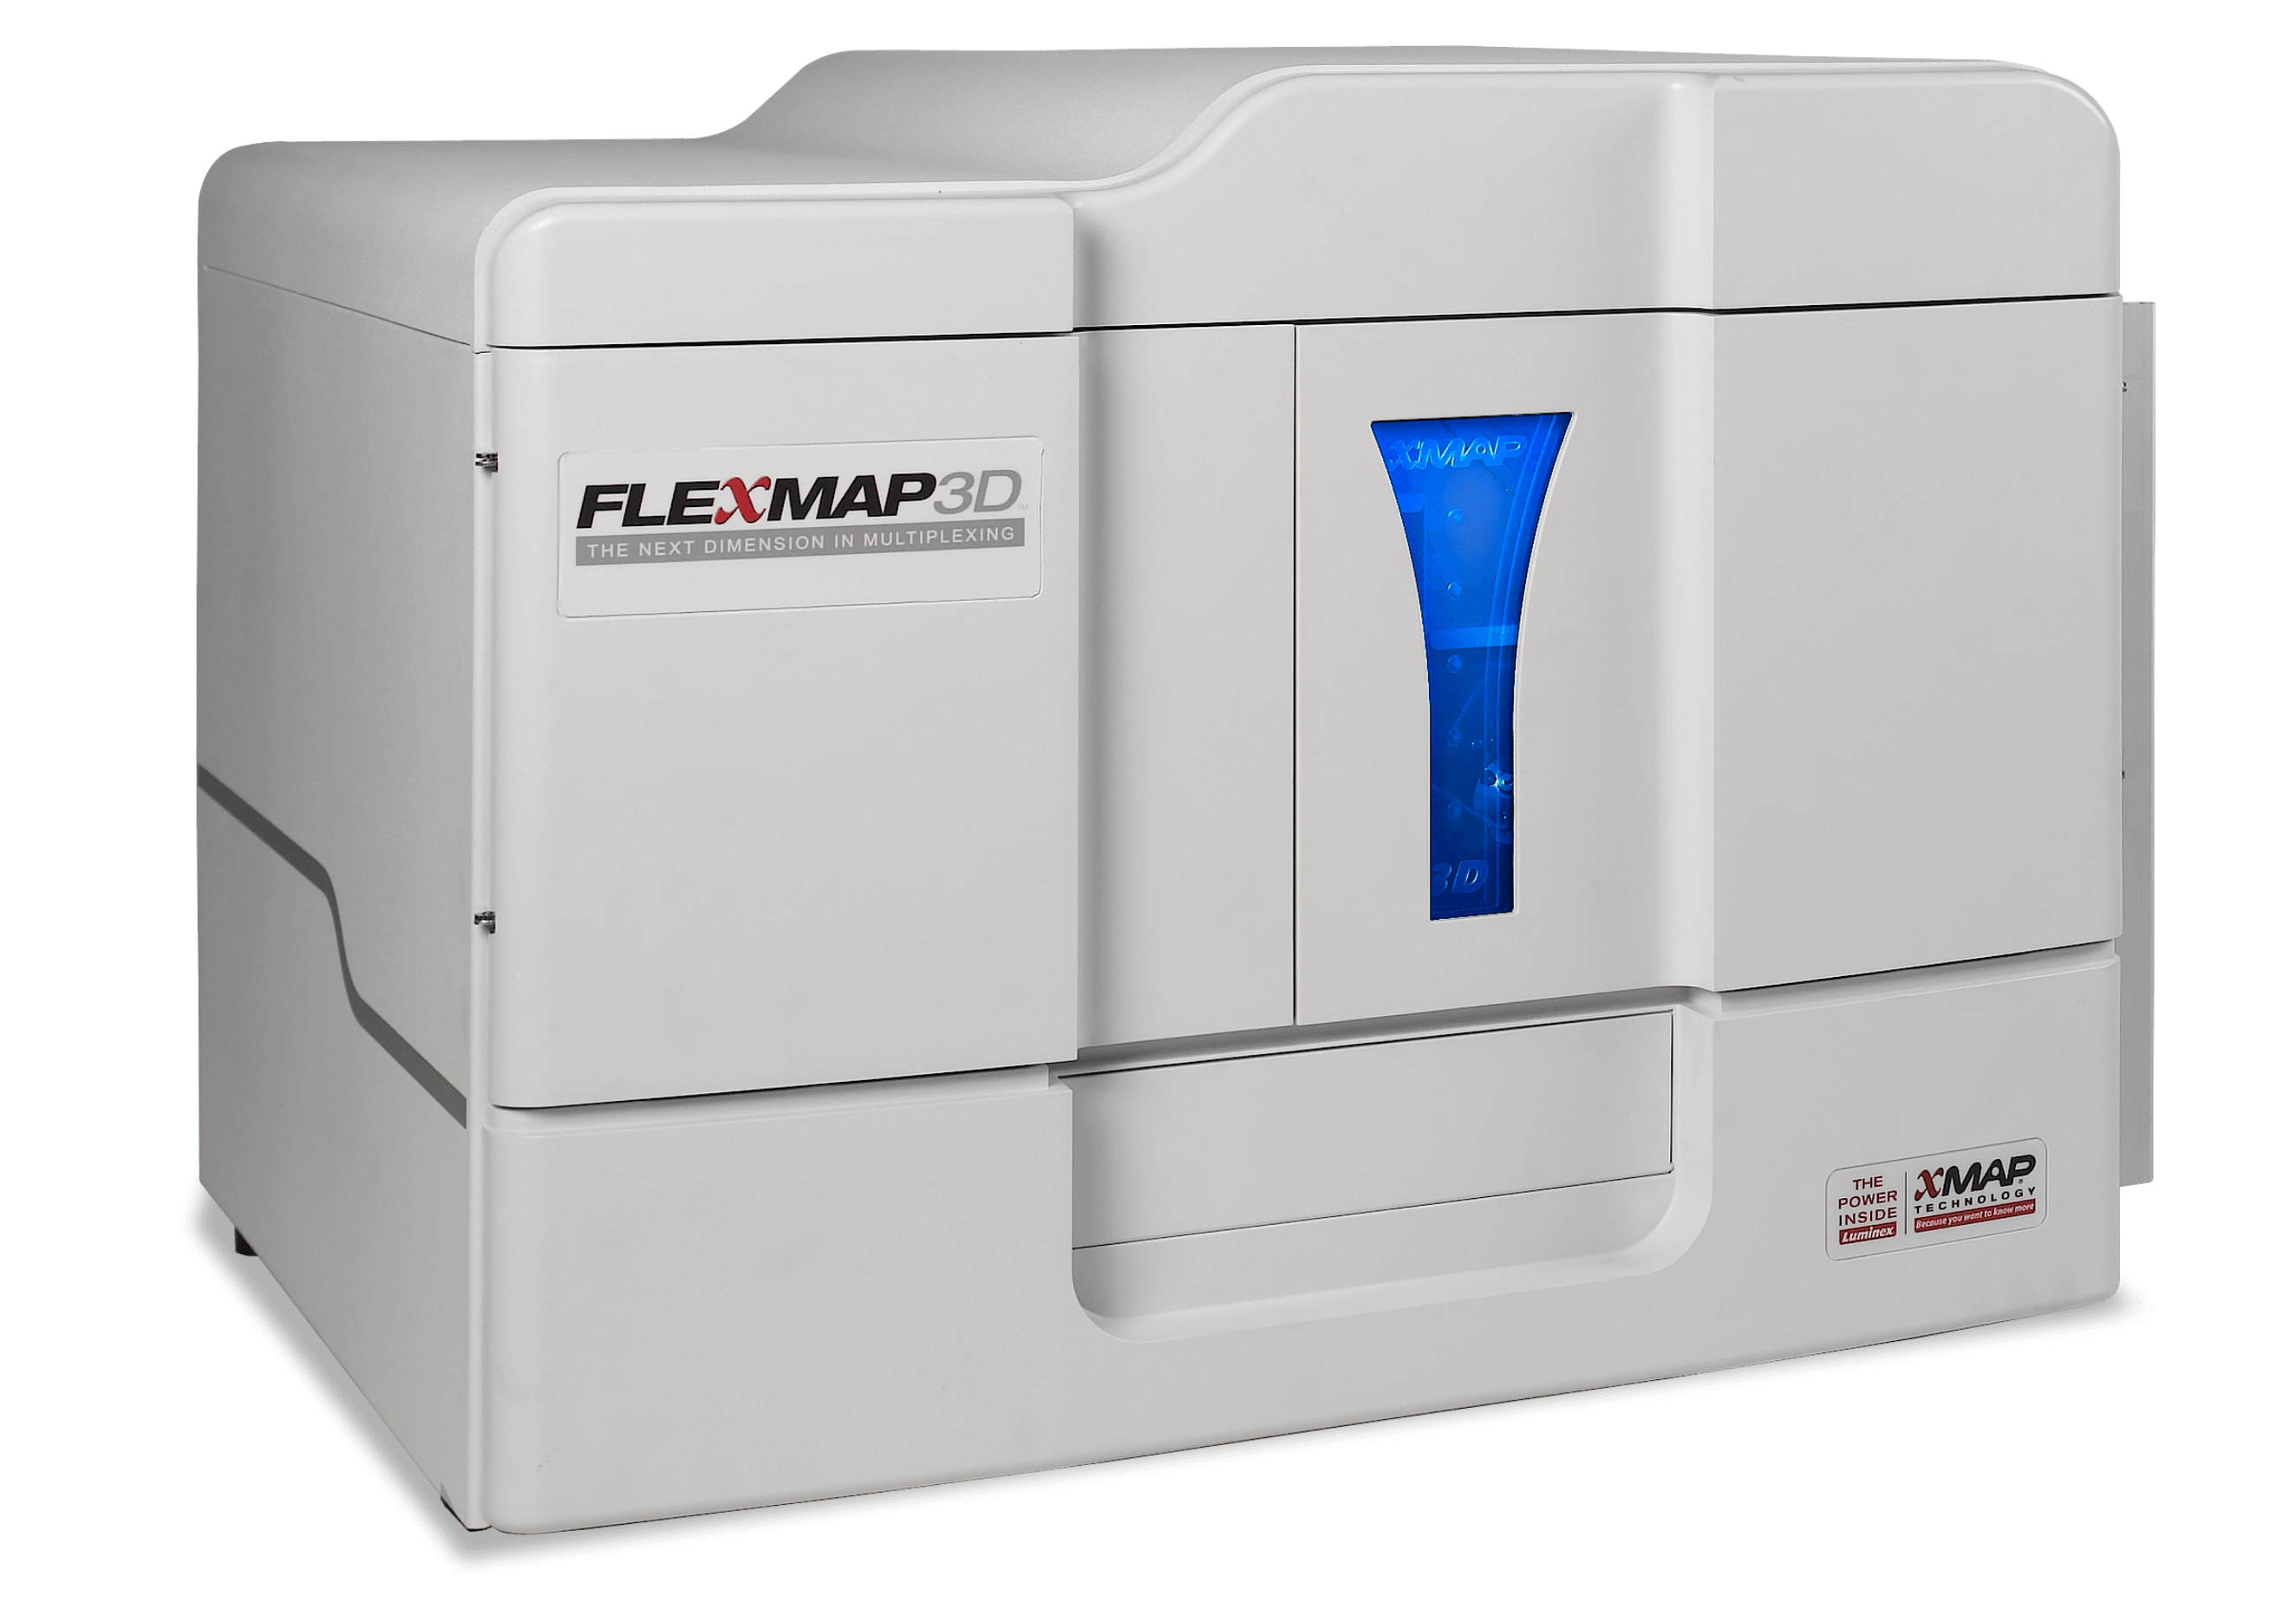 FLEXMAP 3D System